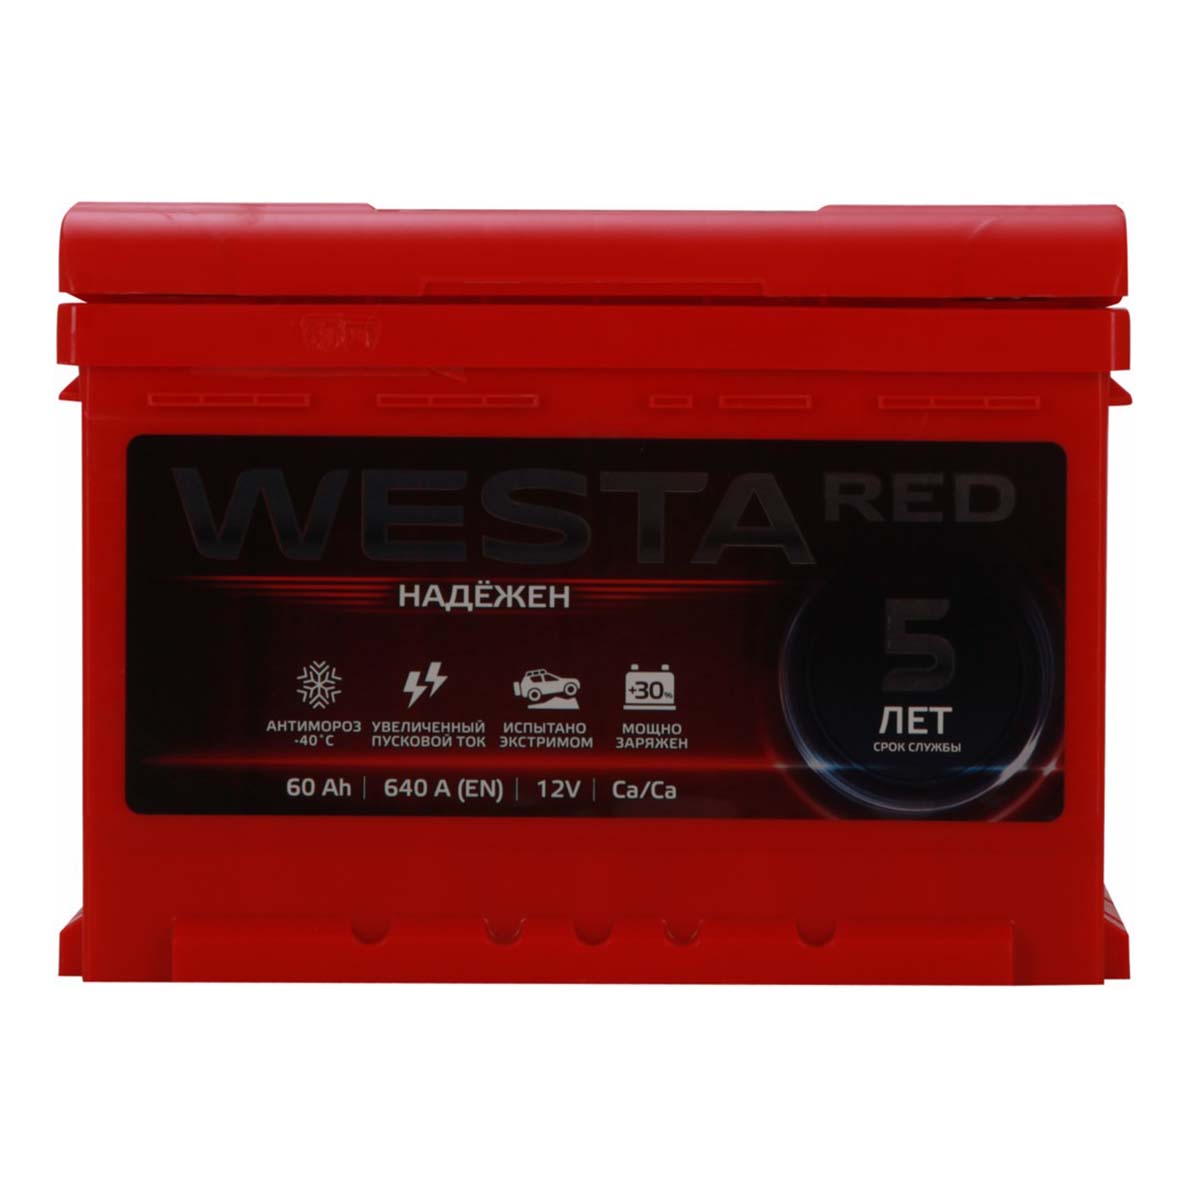 Батарея аккумуляторная Westa Red 6ст-60 обратная полярность